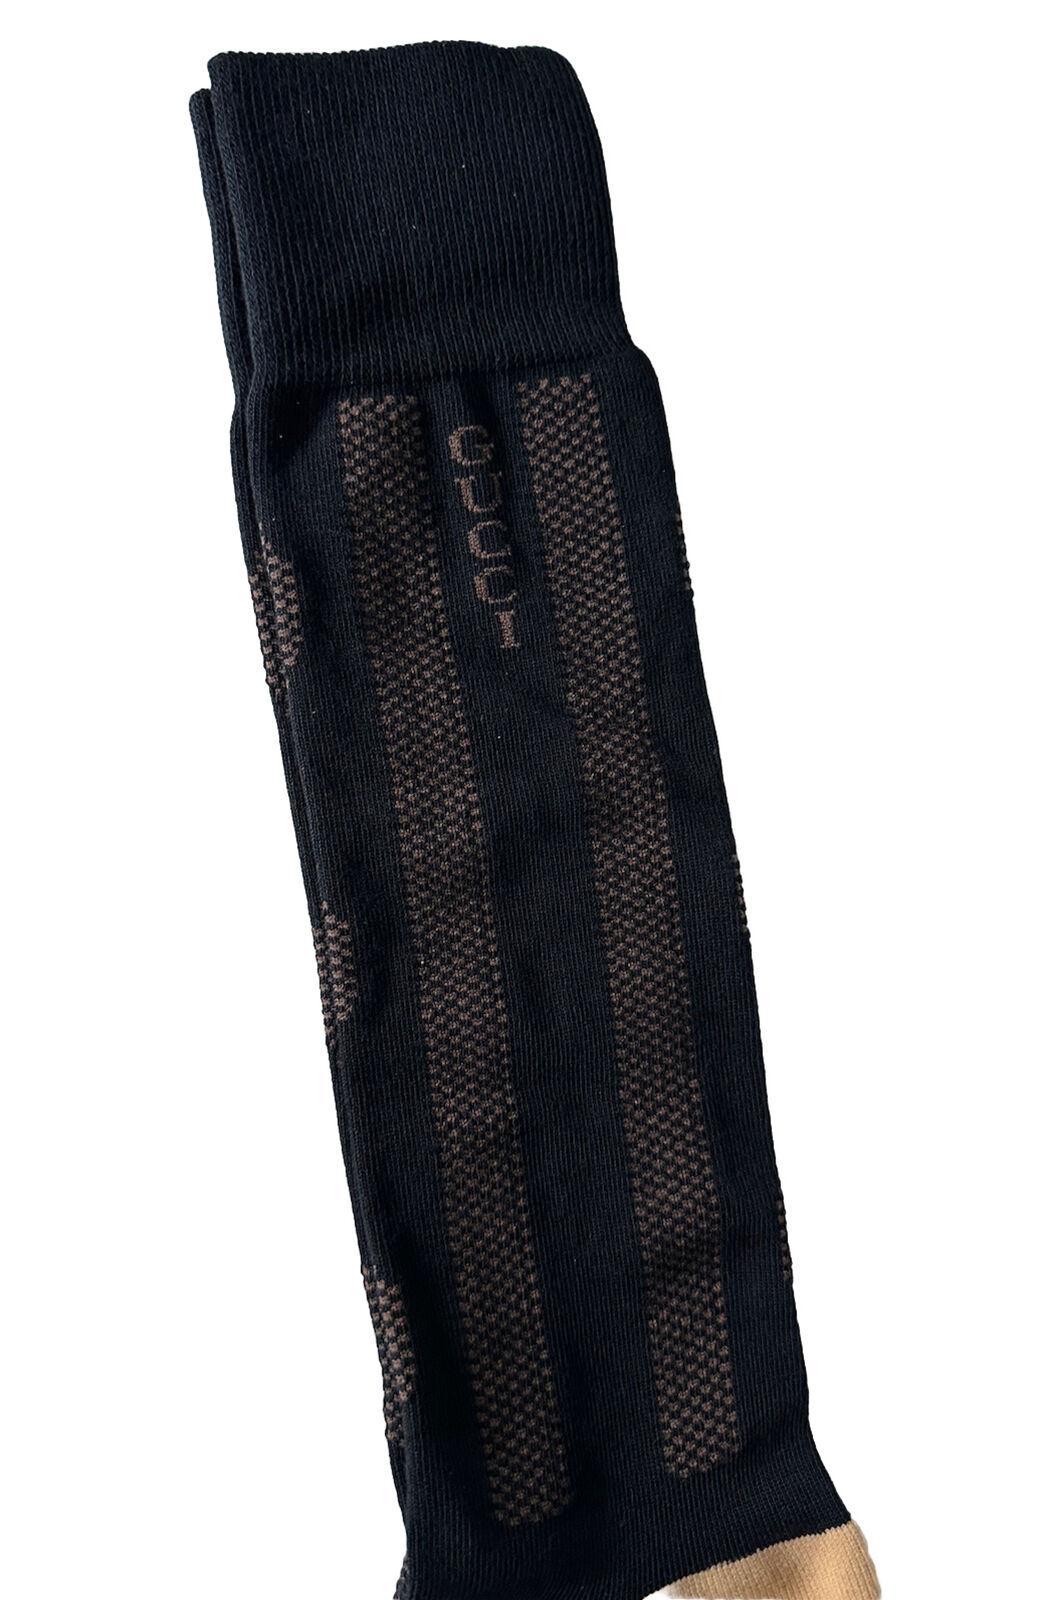 Носки NWT Gucci GG черные/бежевые, размер S (18-20 см), производство Италия 675854 